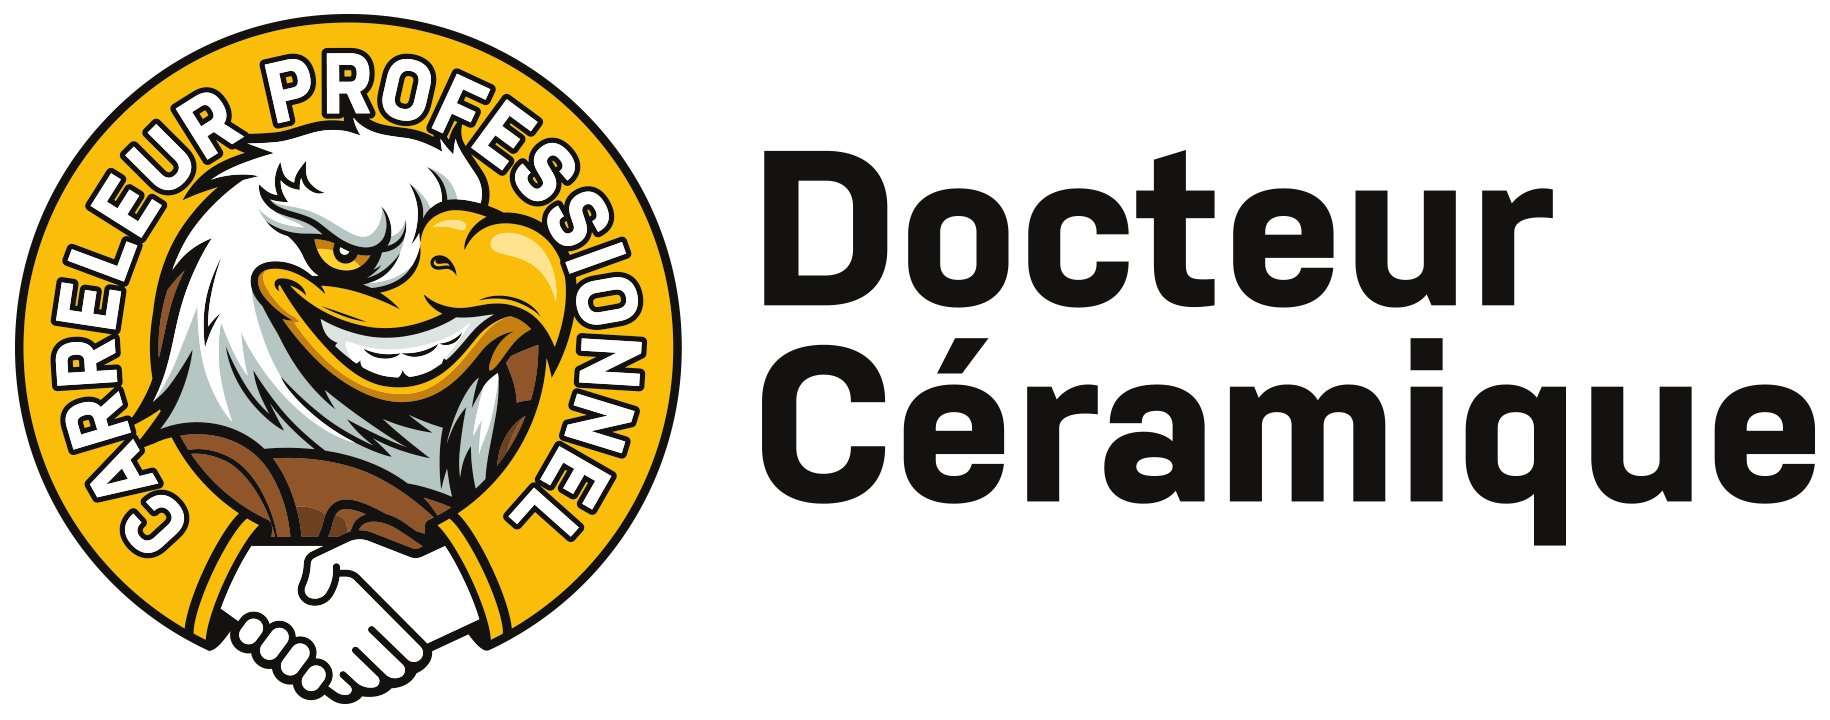 logo Docteur Ceramique 6x3 pt